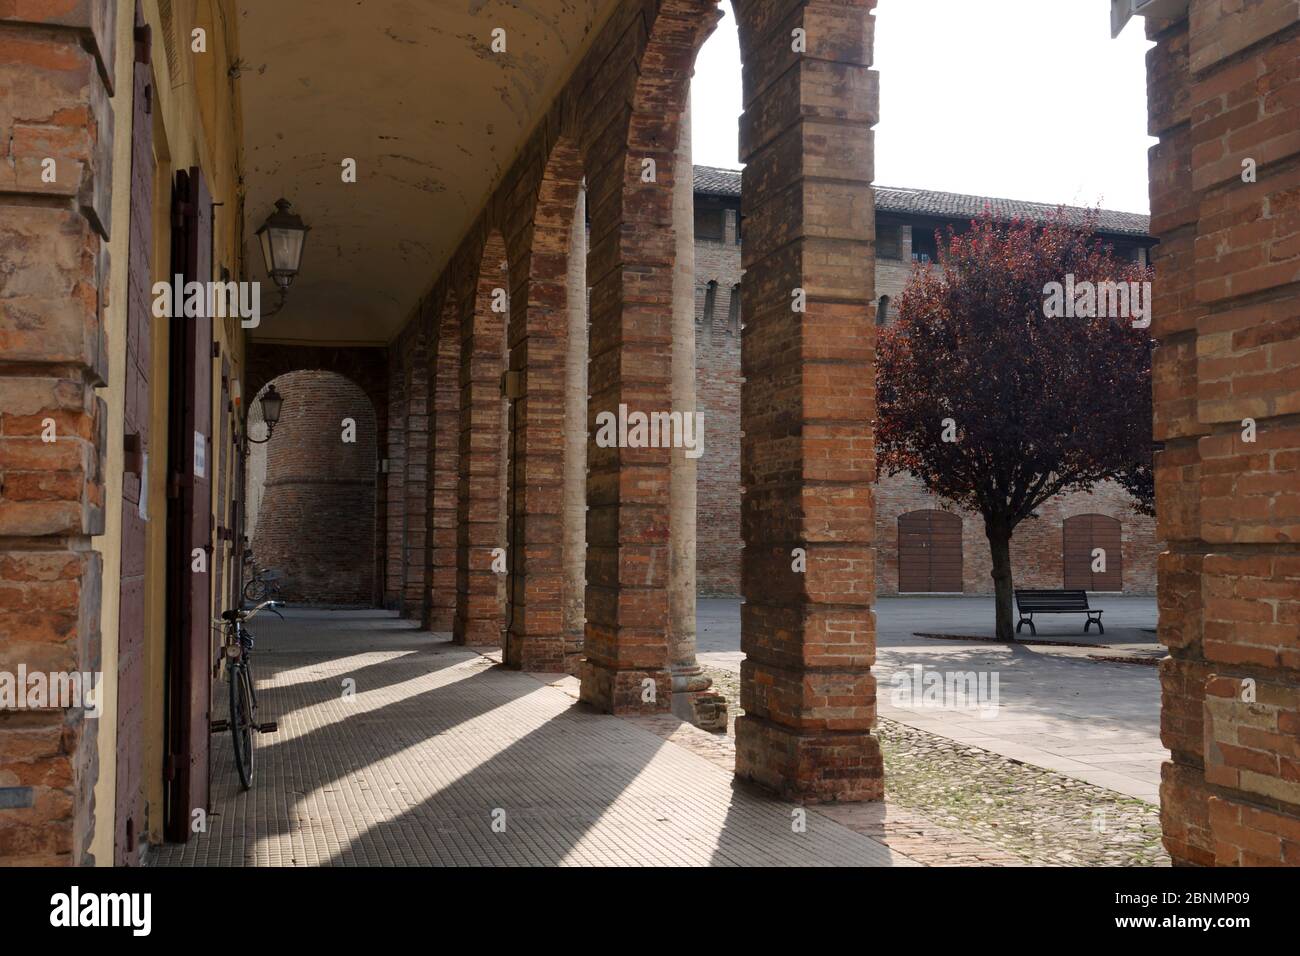 Puerta en Forlimpopoli. Forlimpopoli, Emilia-Romaña, provincia de Forlì-Cesena, Italia. Foto de stock